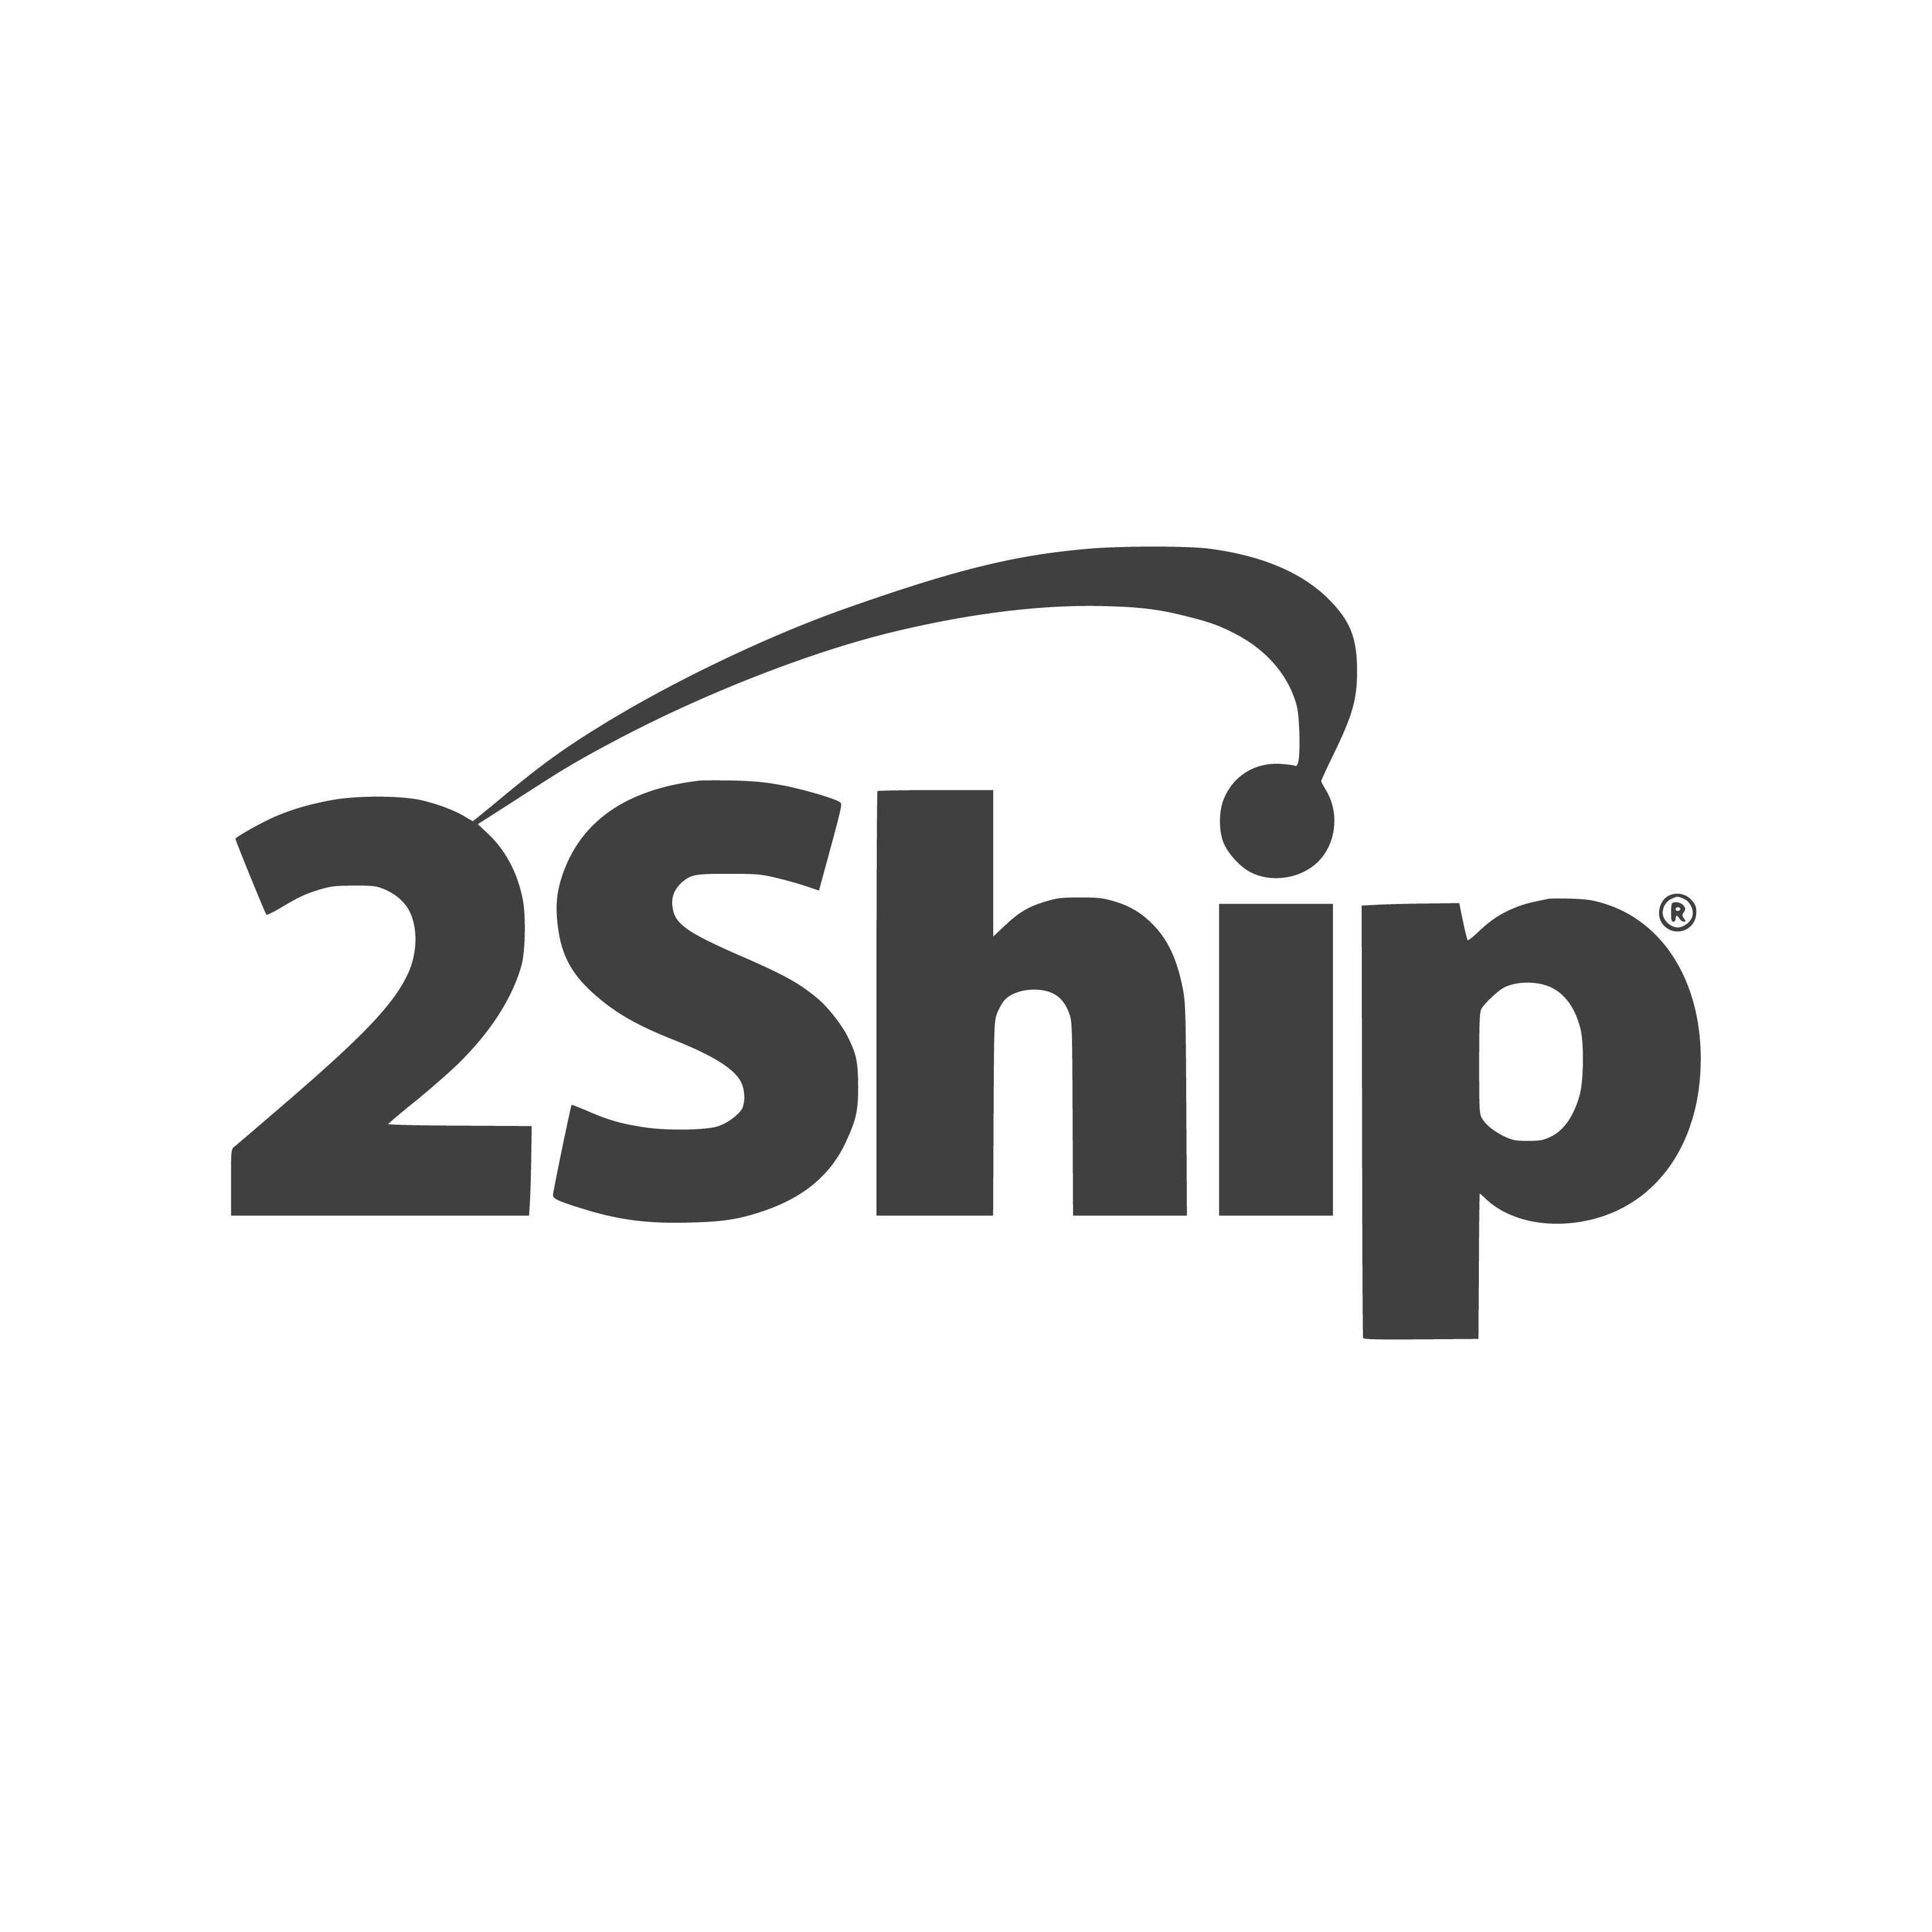 2Ship